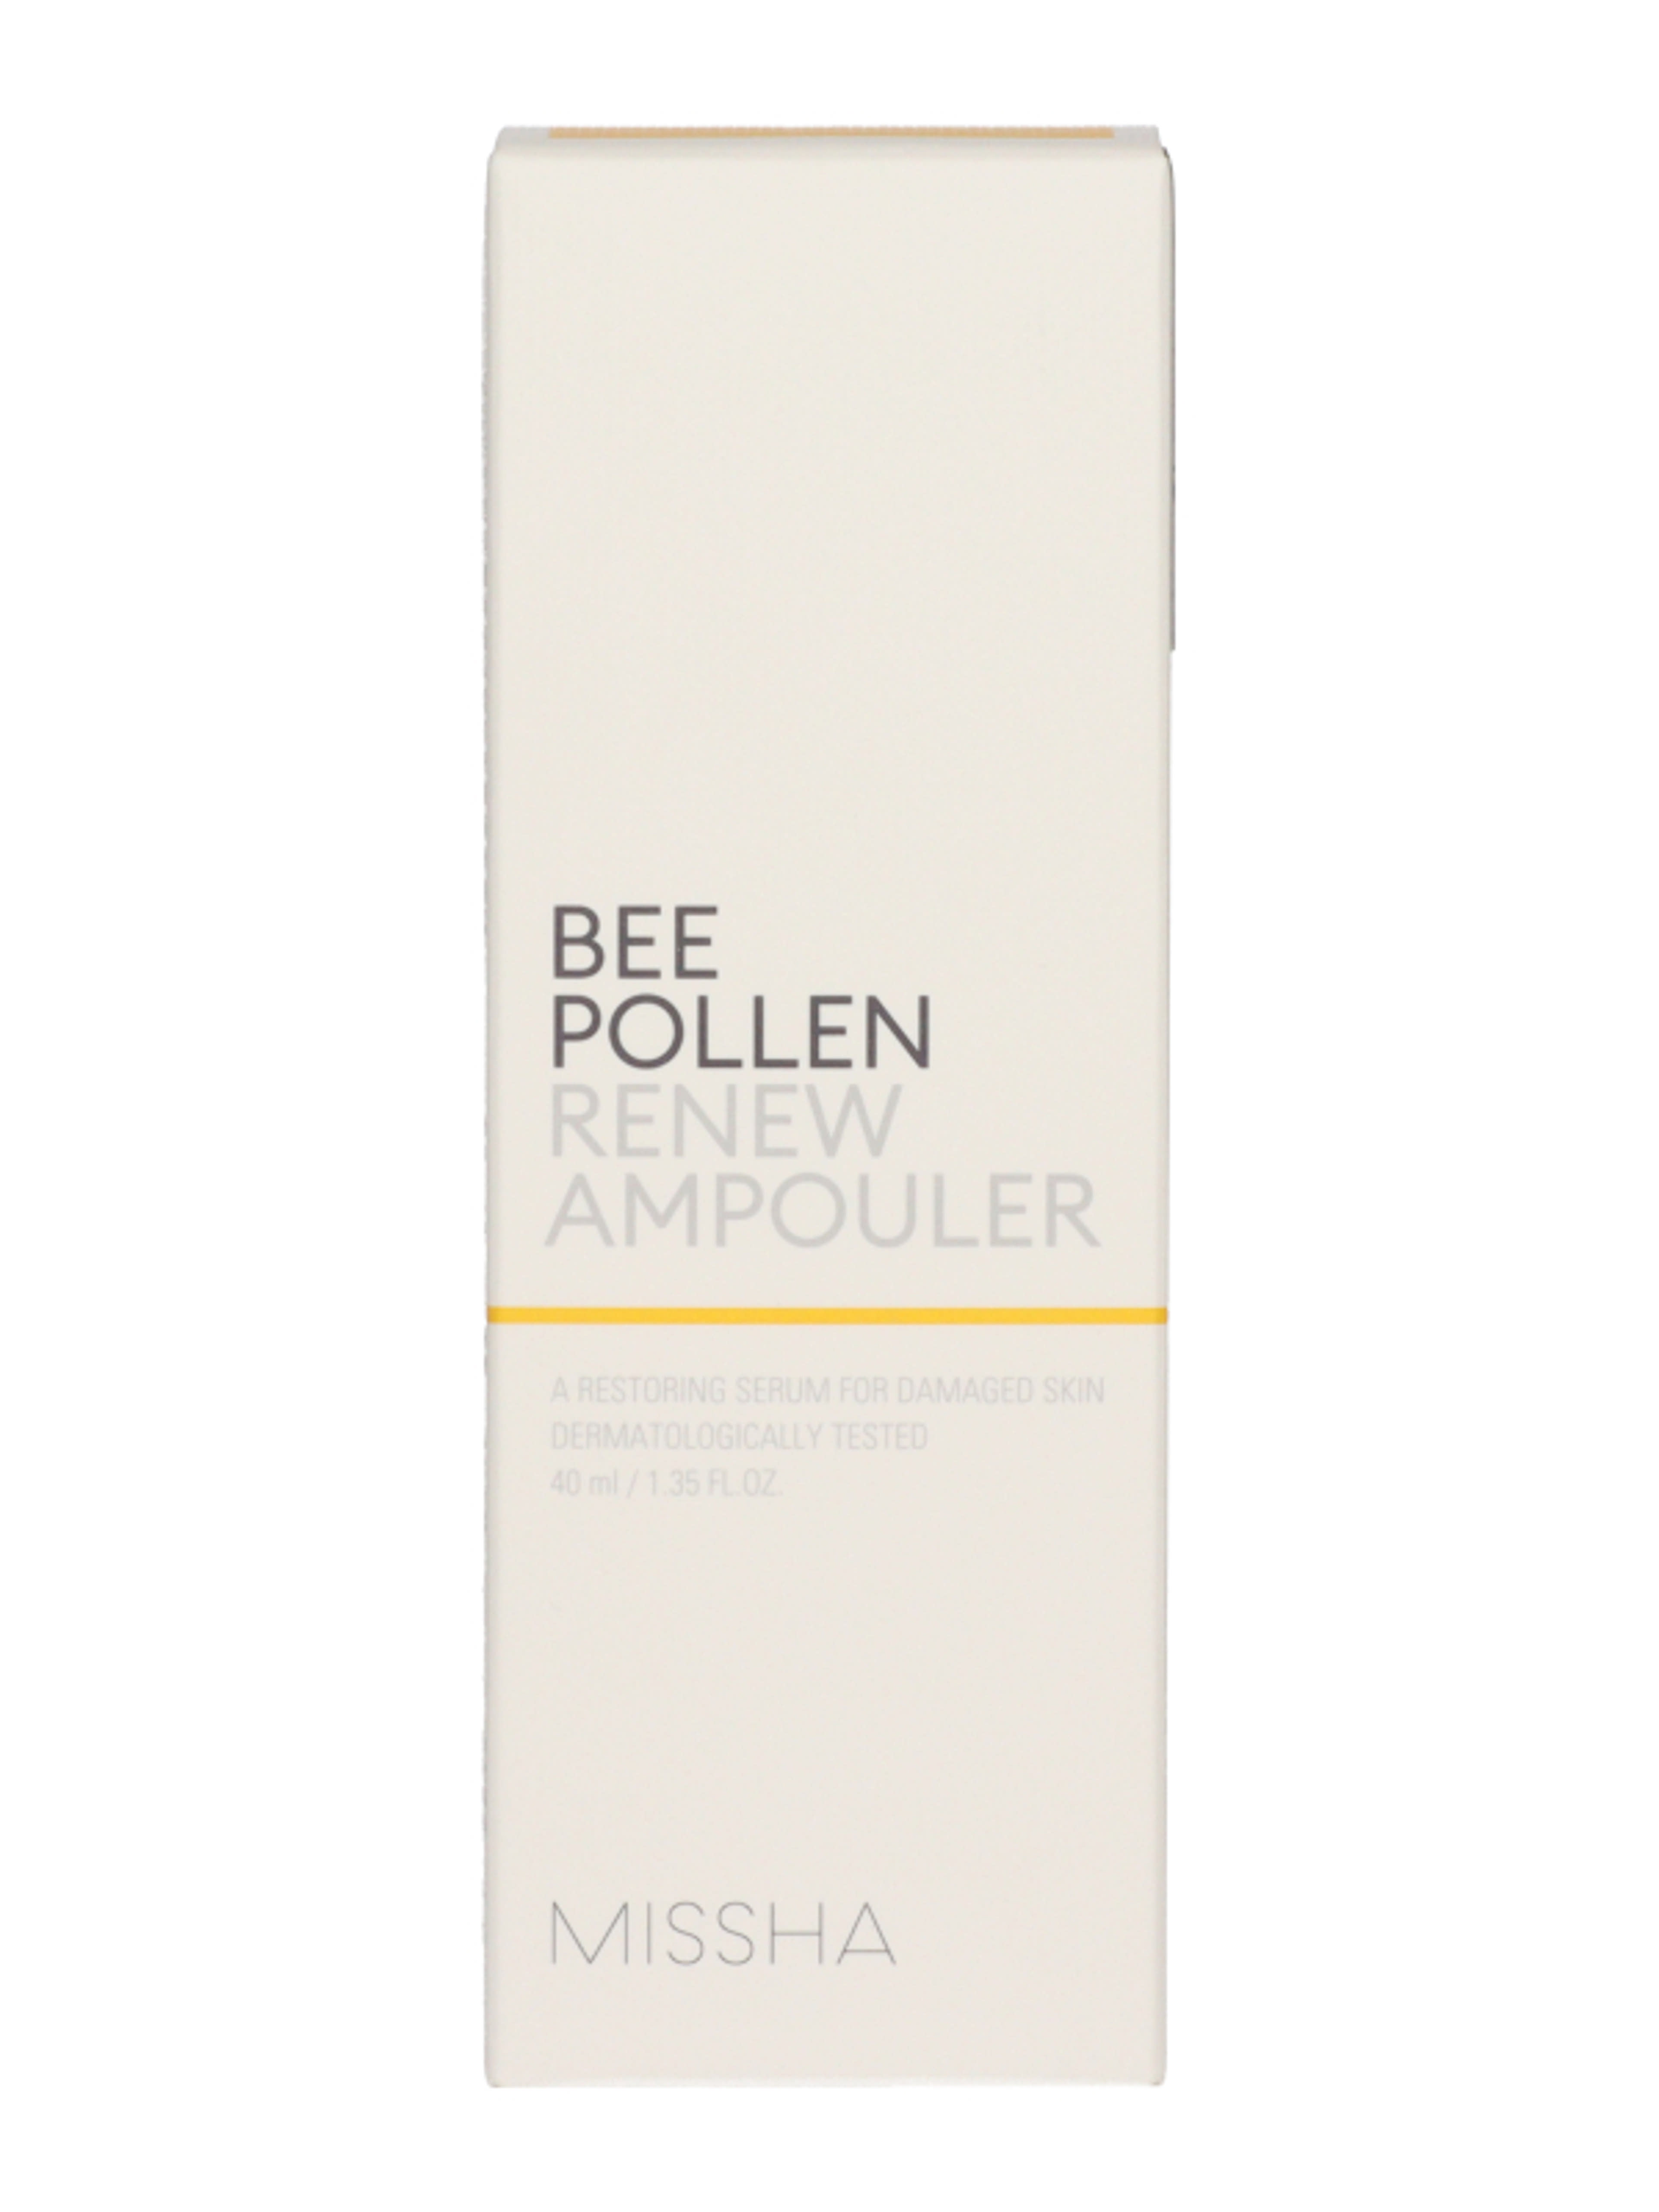 Missha Bee Pollen bőrmegújítő szérum - 40 ml